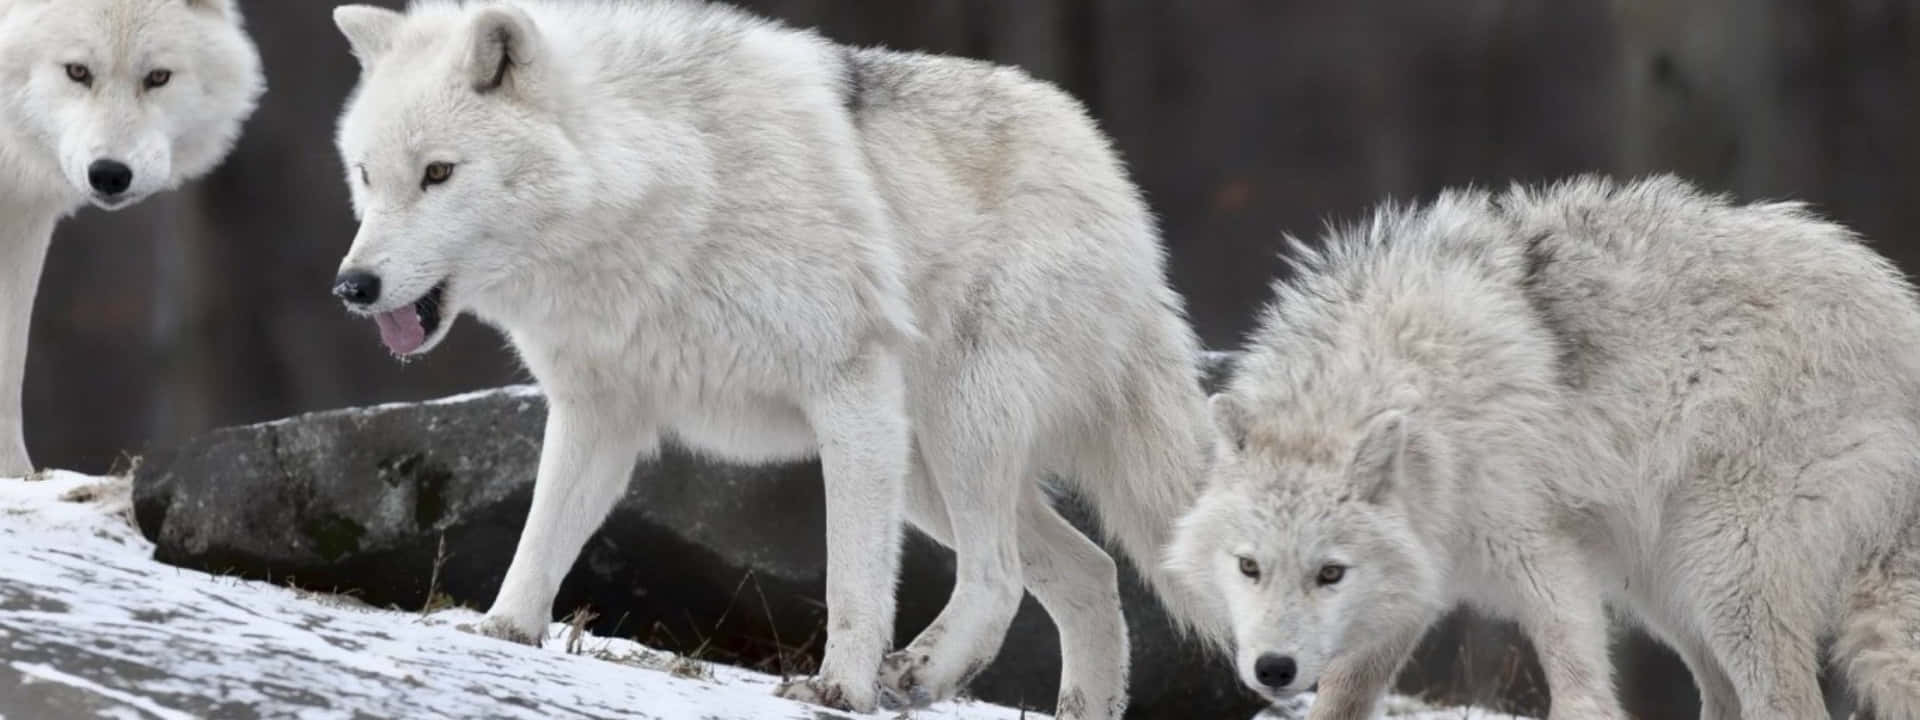 Imagenpanorámica De Lobos Blancos En Invierno